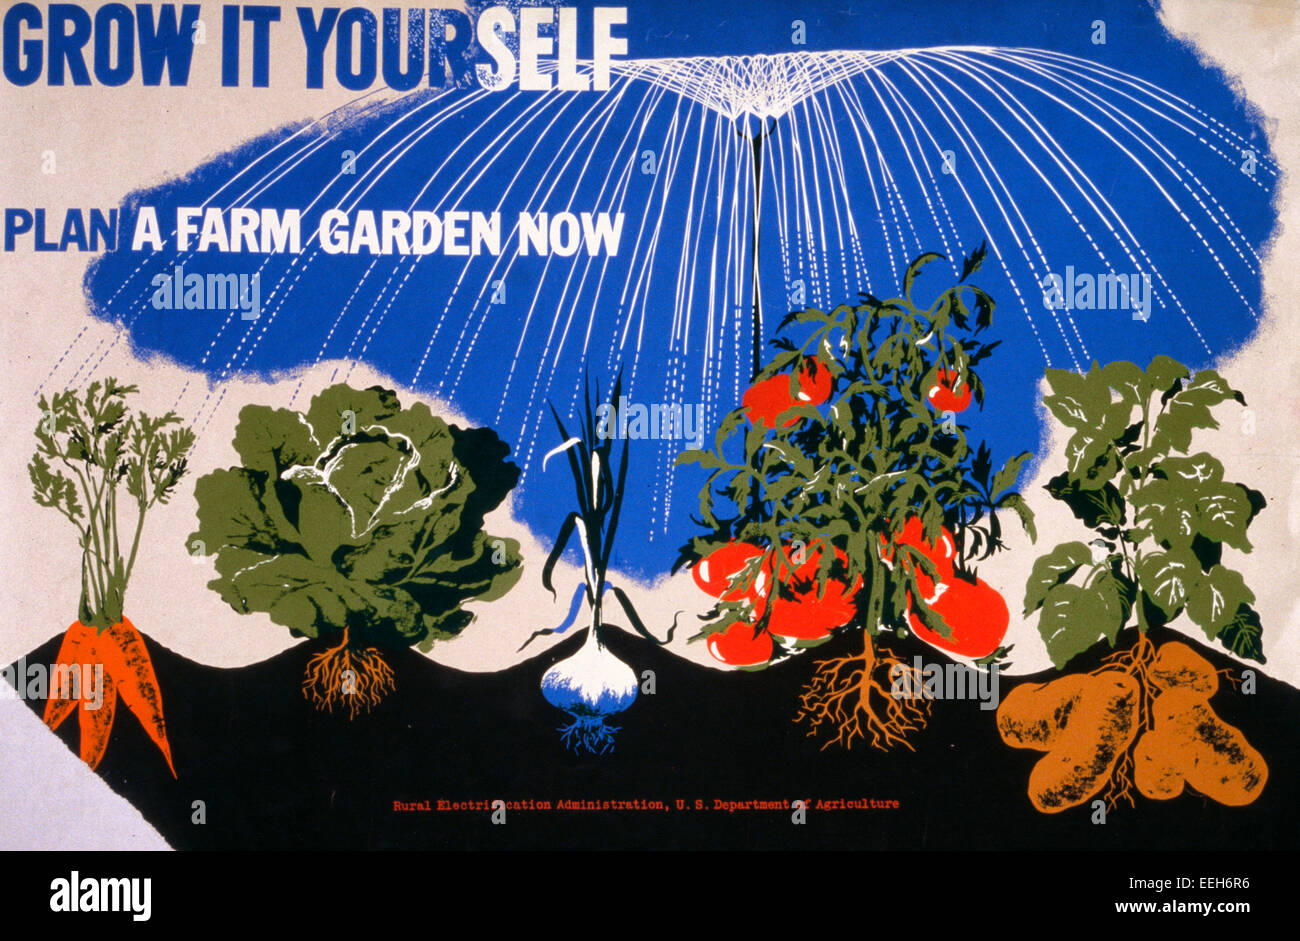 Wachsen Sie es selbst Plan ein Bauerngarten nun. Plakat für das US Department of Agriculture Sieg Gärten zu fördern, zeigen, Karotten, Kopfsalat, Mais, Tomaten und Kartoffeln wachsen, ca. 1943 Stockfoto